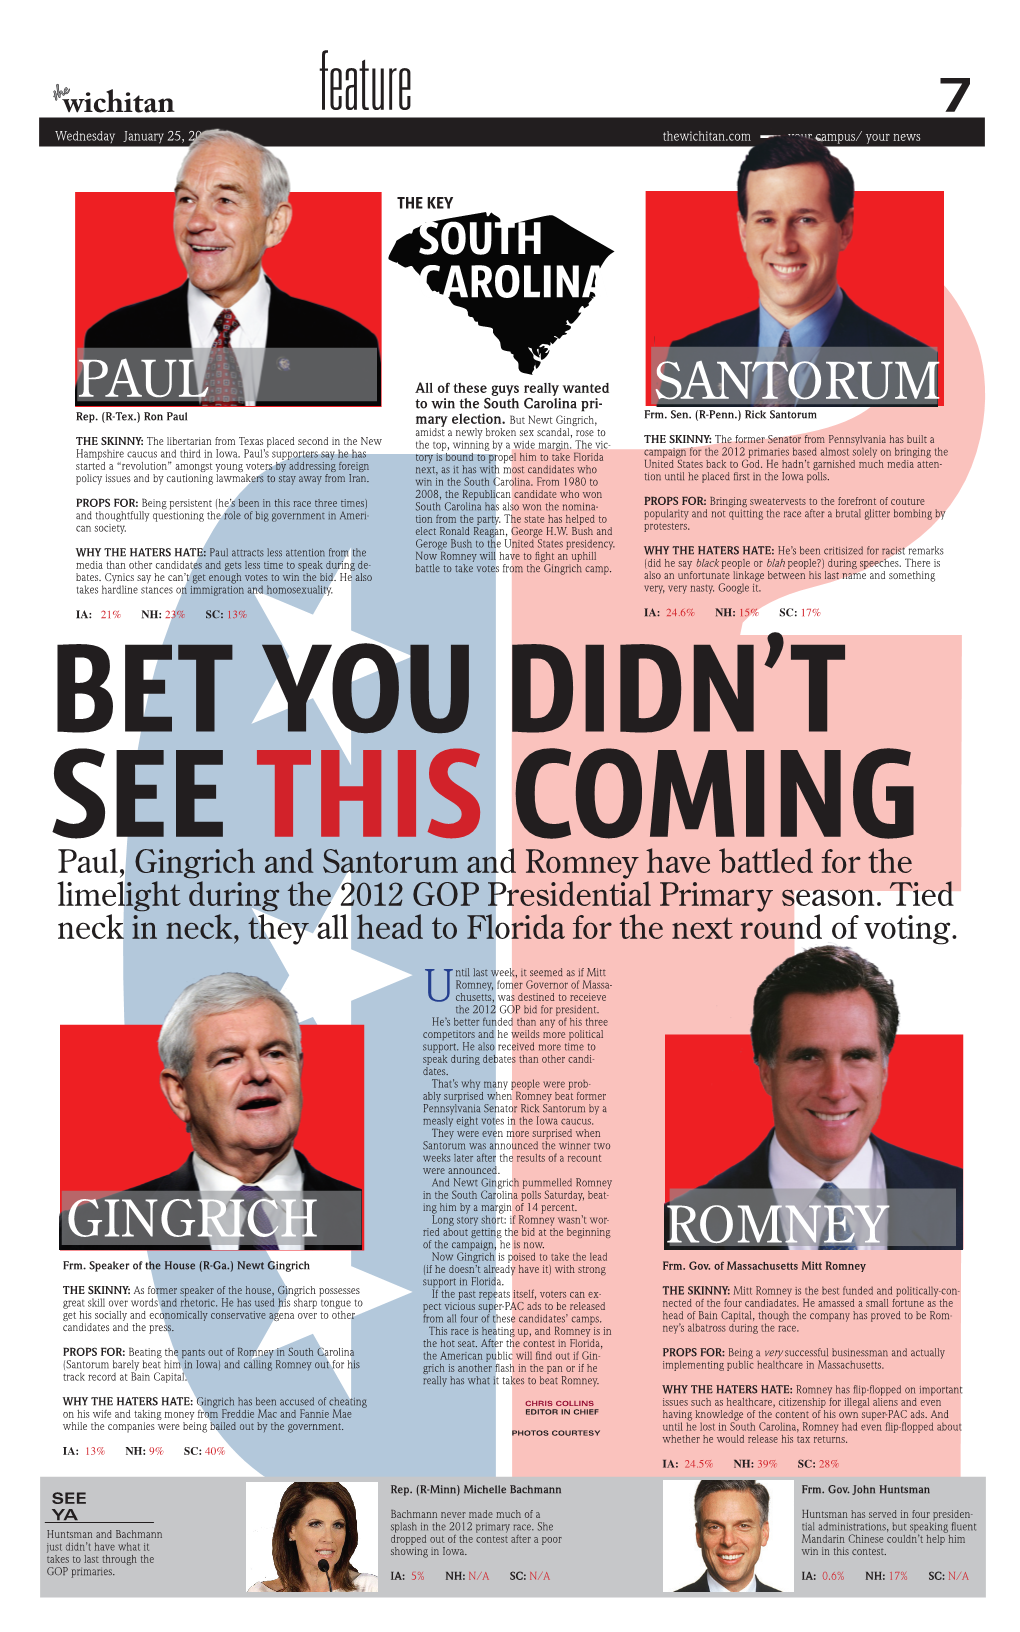 Santorum Gingrich Romney Paul